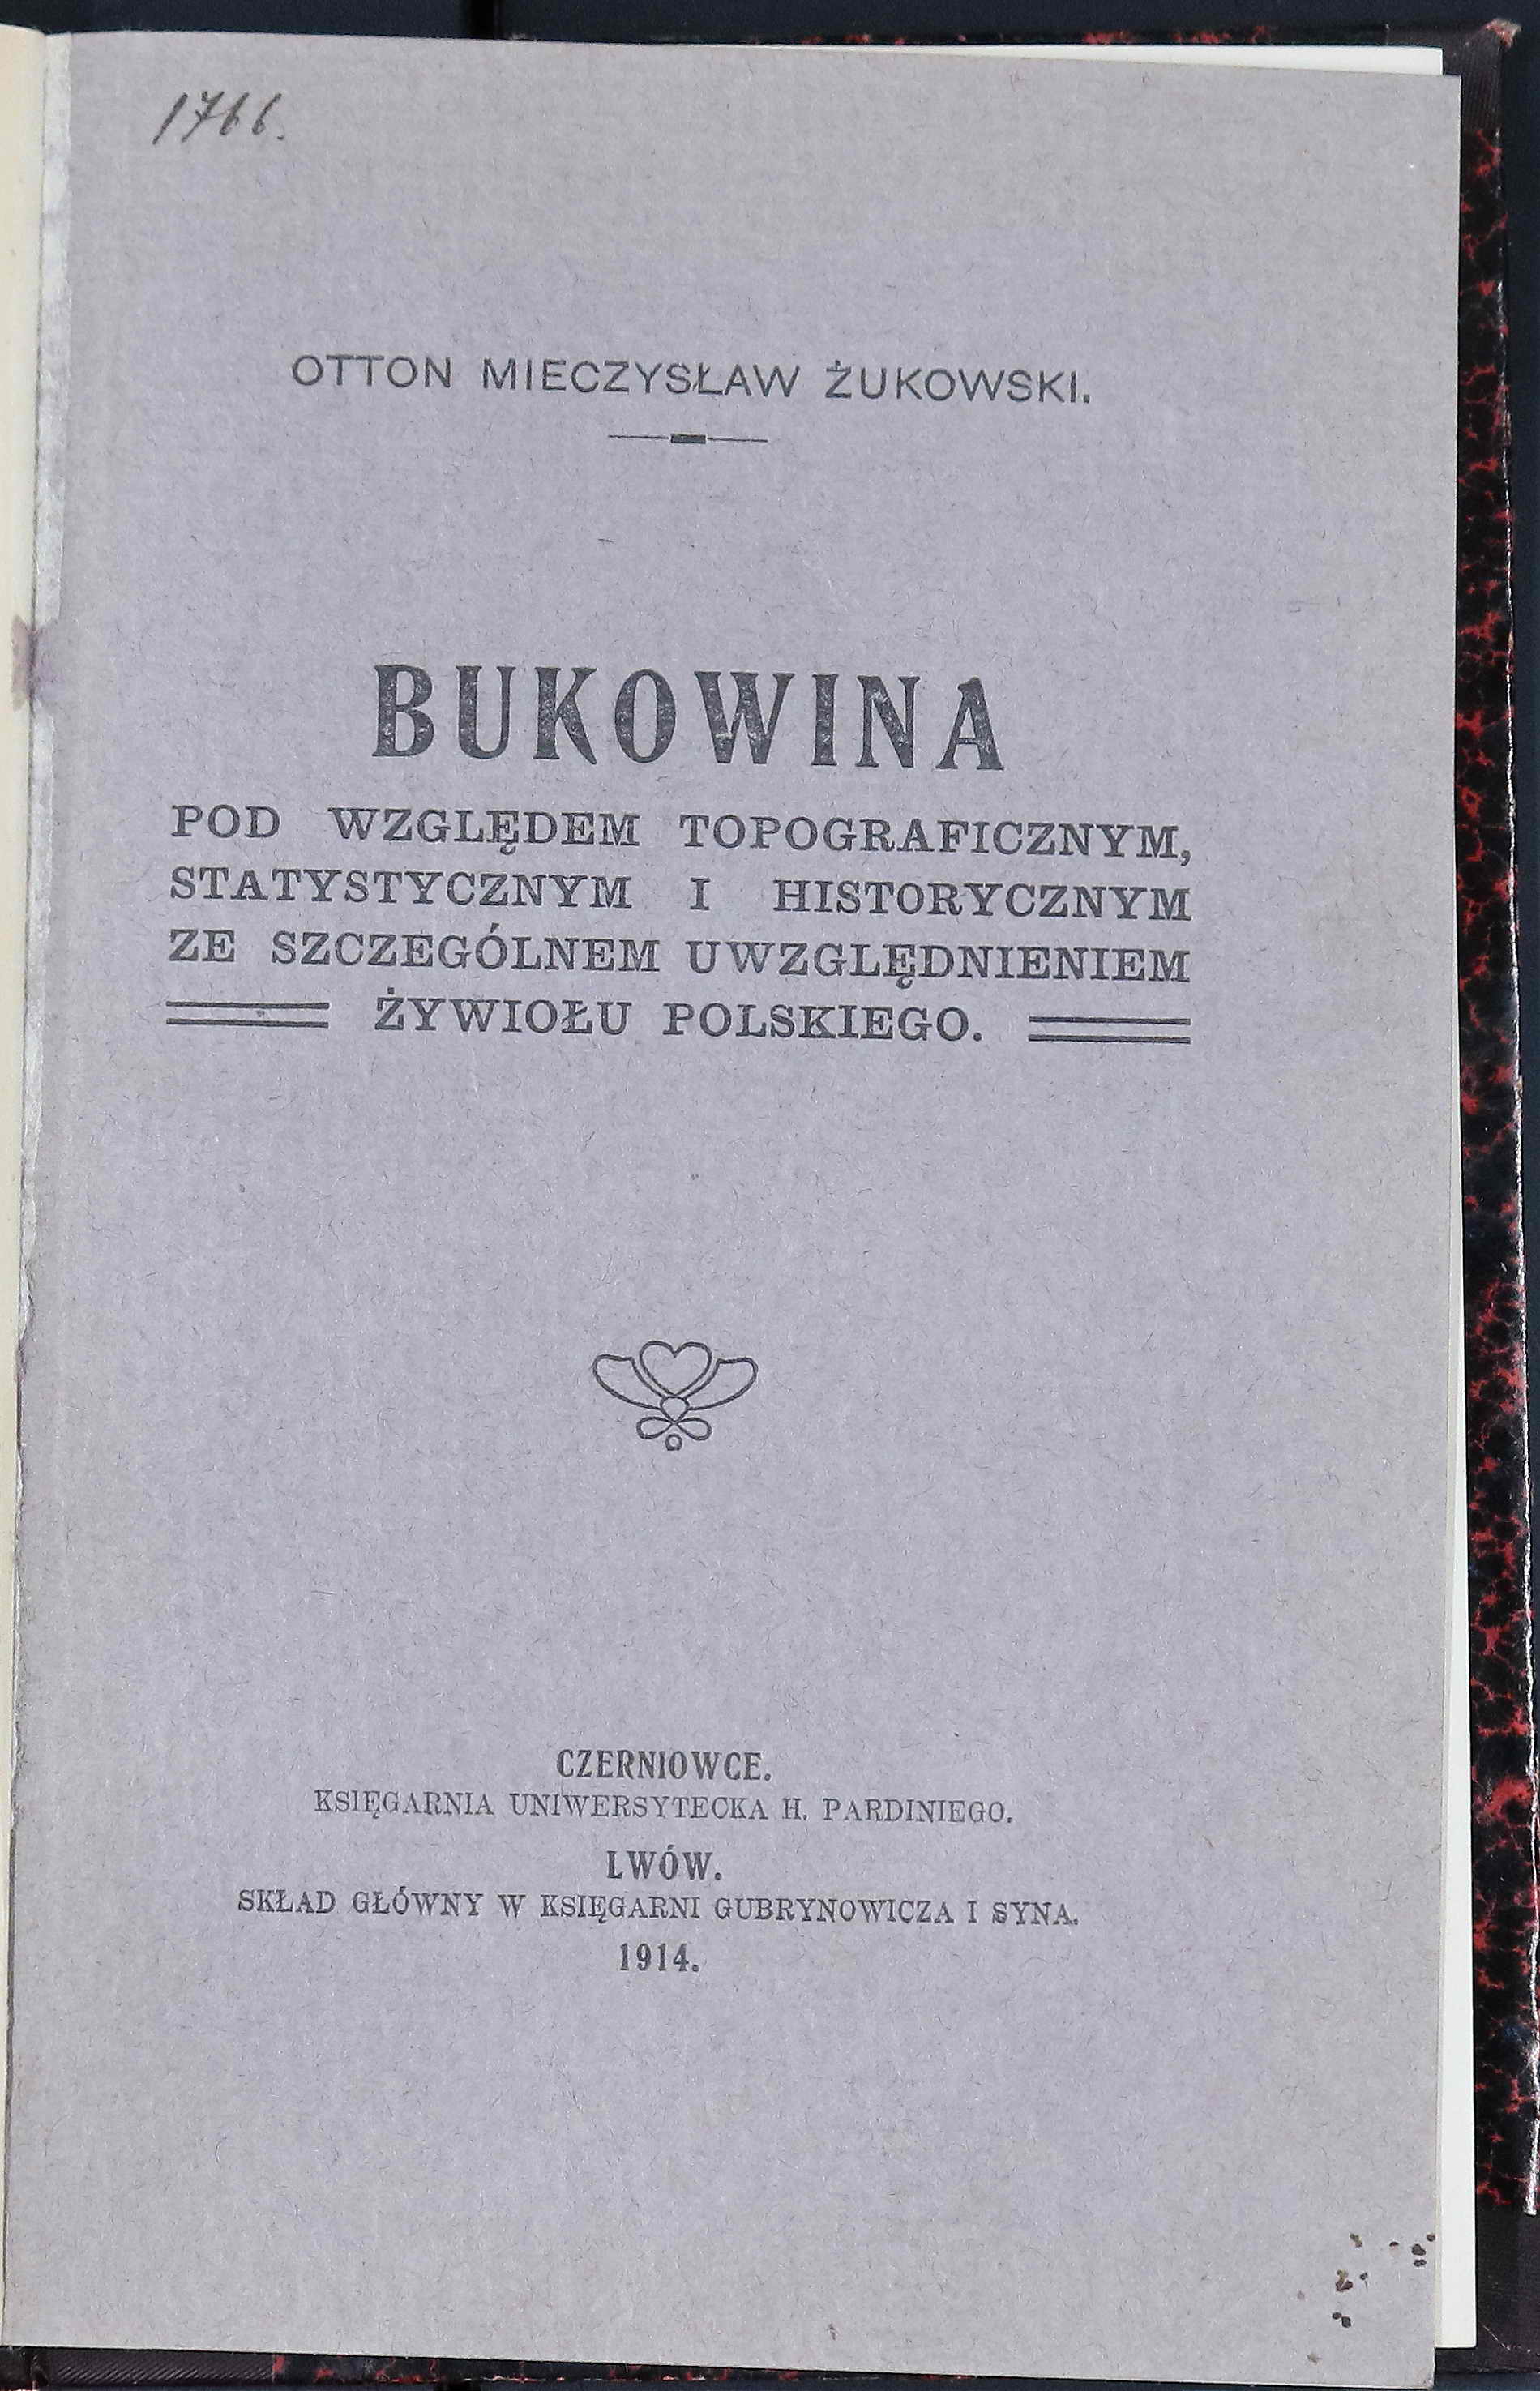 Bukowina pod względem topograficznym, statystycznym i historycznym ze szczególnym uwzględnieniem żywiołu polskiego.